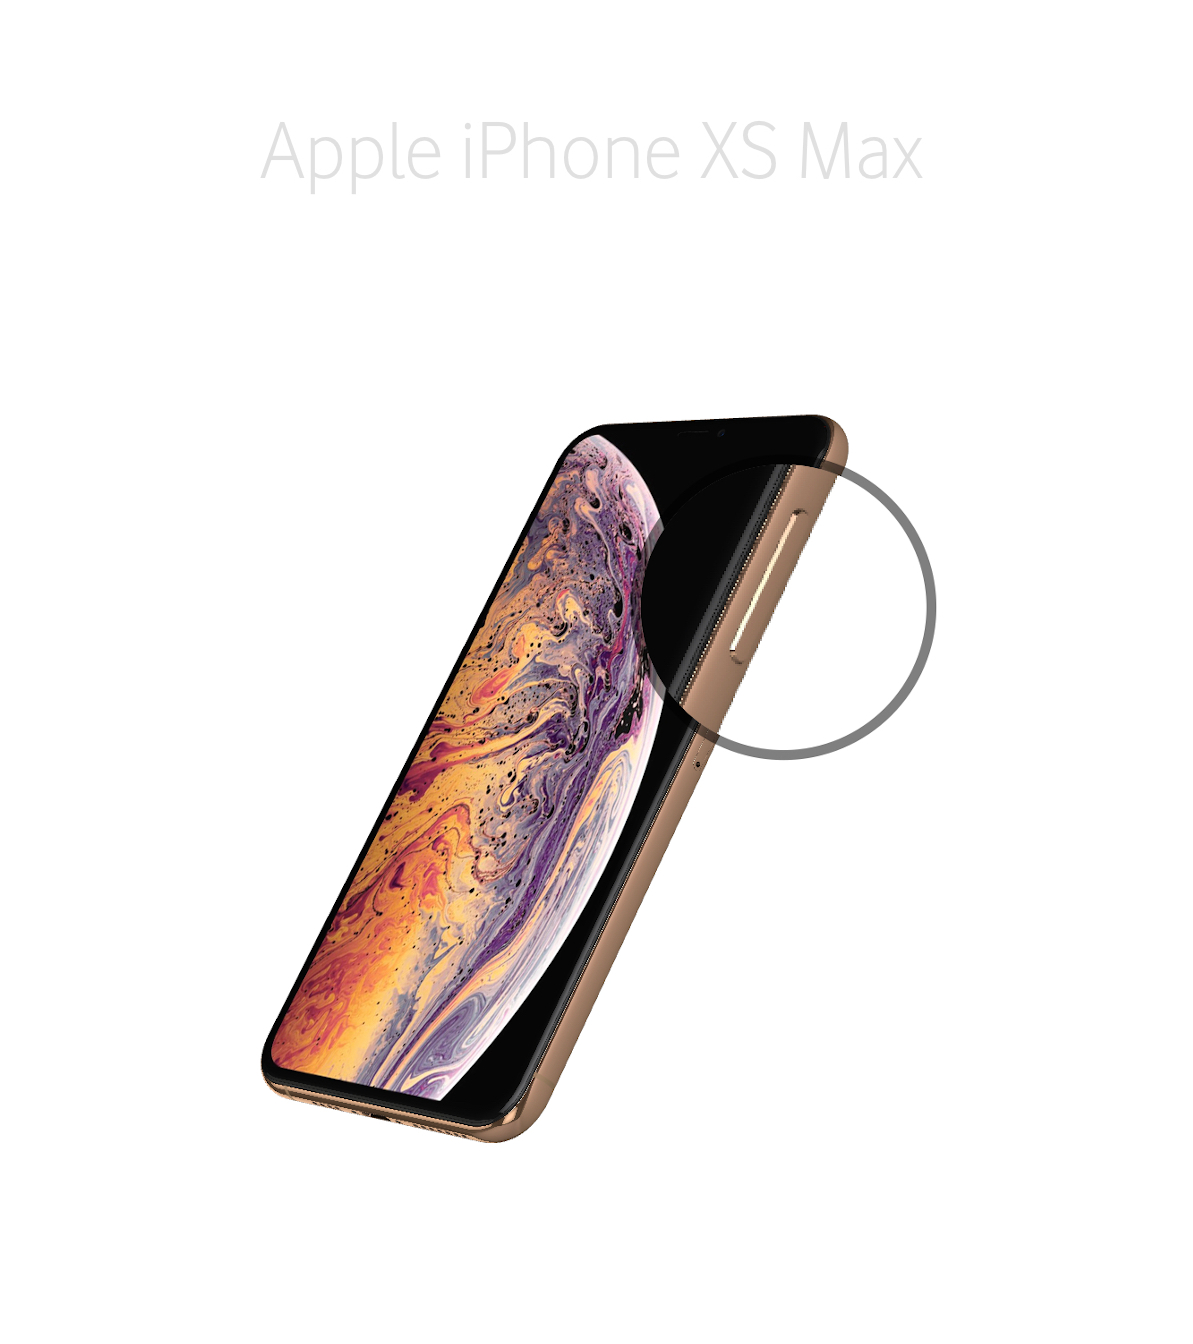 Laga sidoknapp (onoff knapp) iPhone Xs Max